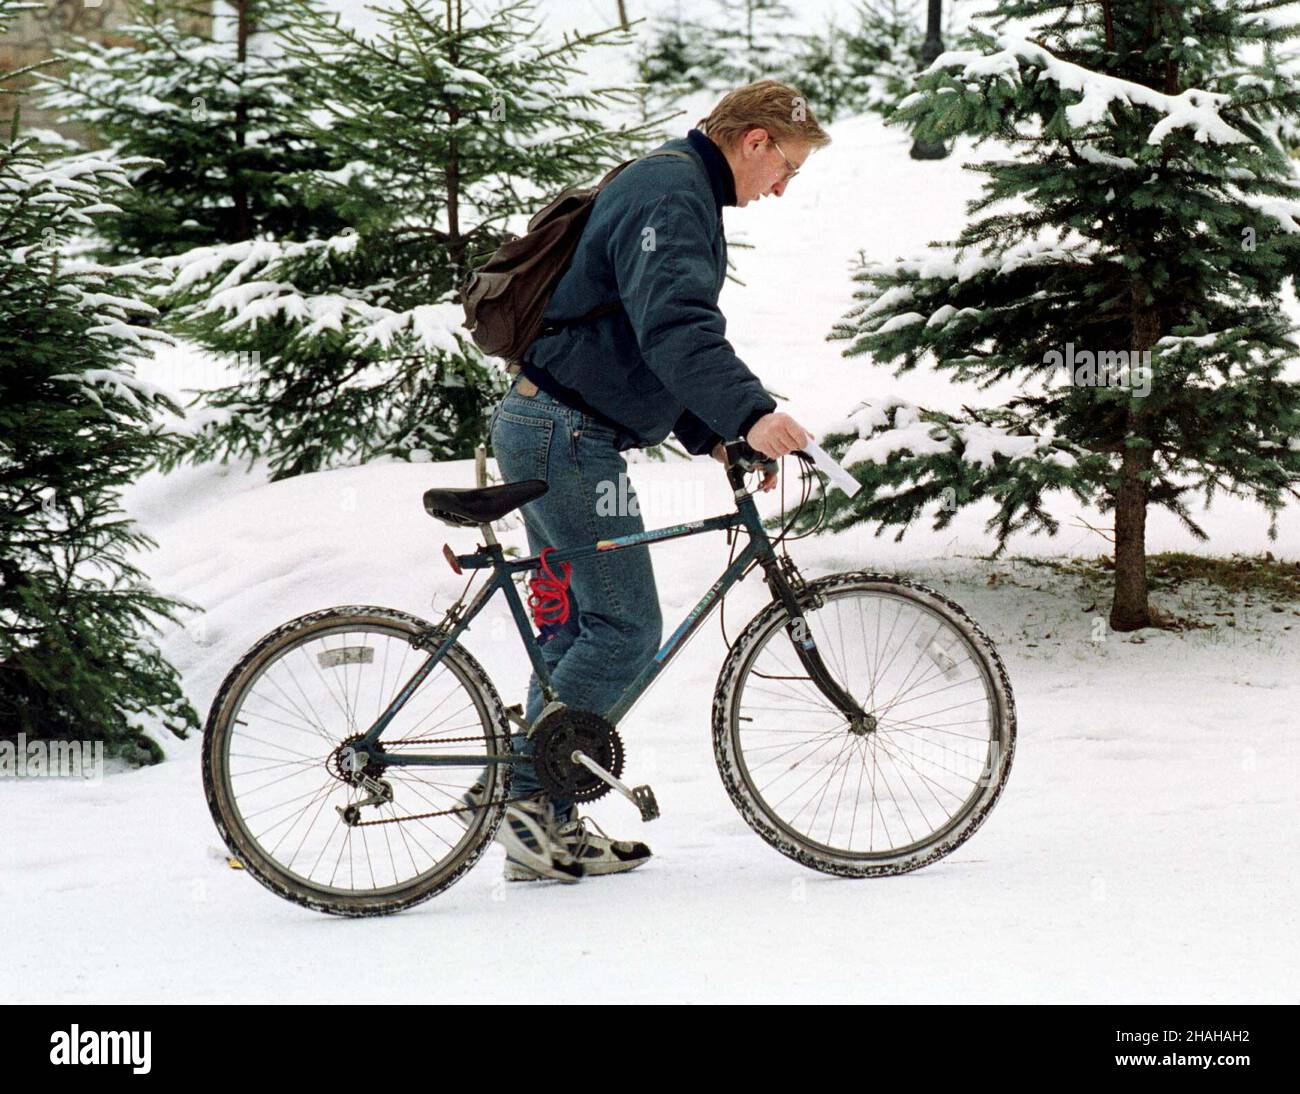 Rabka, 29.12.1999. Ciê¿kie czasy dla cyklistów. (mr) PAP/Jacek Bednarczyk     Rabka, 29.12.1999. Hard season for the bicycle-lovers. (mr) PAP/Jacek Bednarczyk Stock Photo